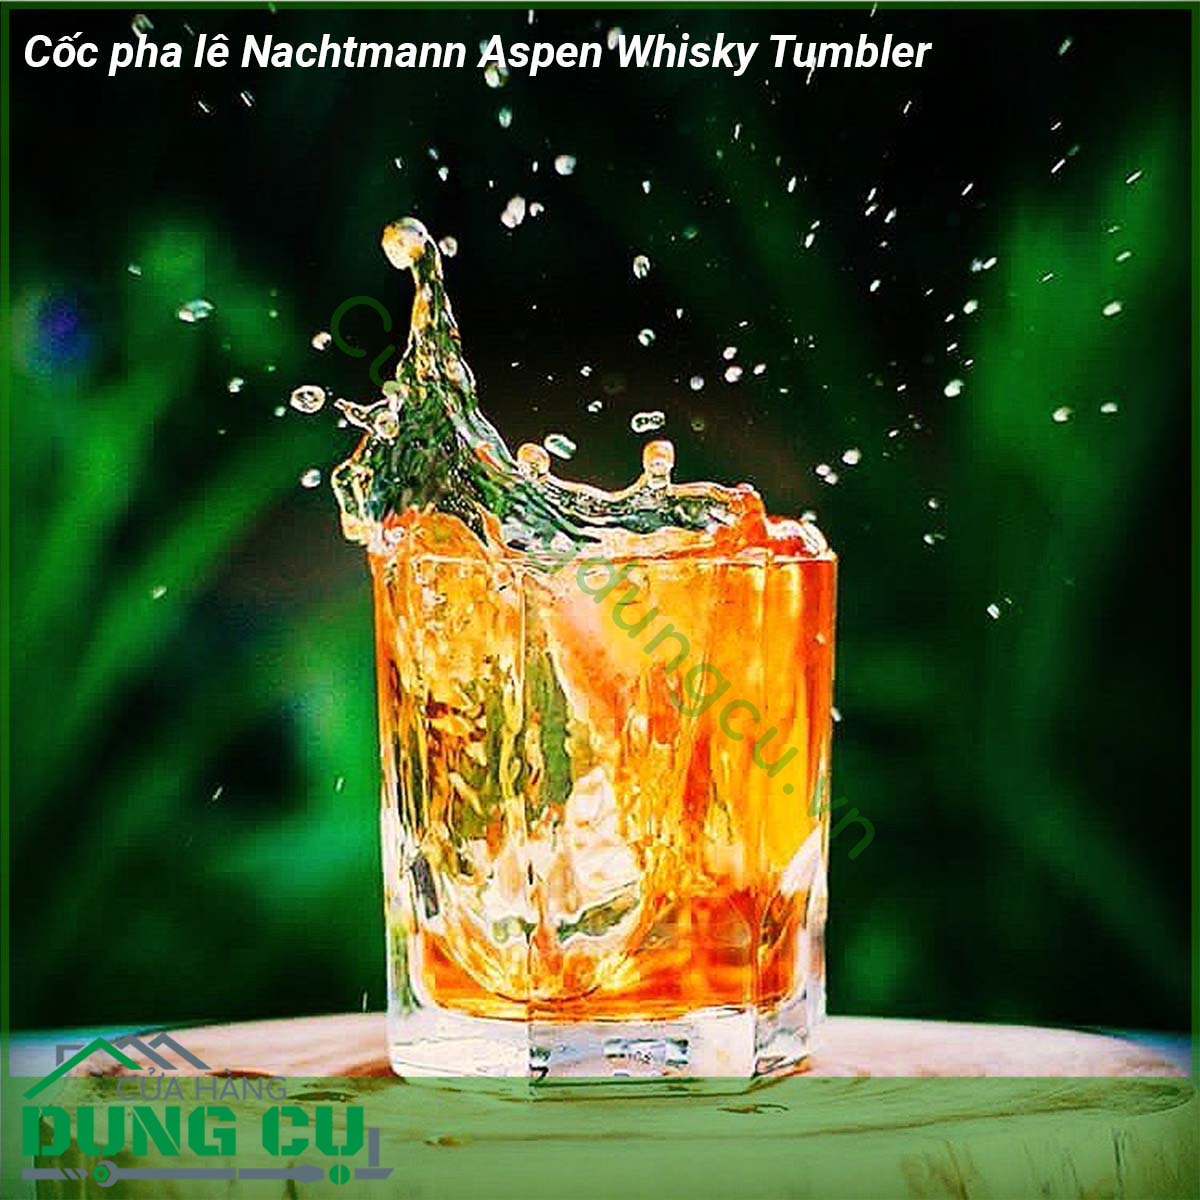 Cốc pha lê Nachtmann Aspen Whisky Tumbler set 4 với chất liệu là pha lê không chì đảm bảo sức khoẻ tuổi thọ cực cao cầm nặng tay và sử dụng công nghệ chống vỡ xước và rạn nứt hiệu quả  Những chiếc cốc pha lê này hoàn hảo cho các loại rượu whisky hảo hạng cocktail nước trái cây và nước ngọt